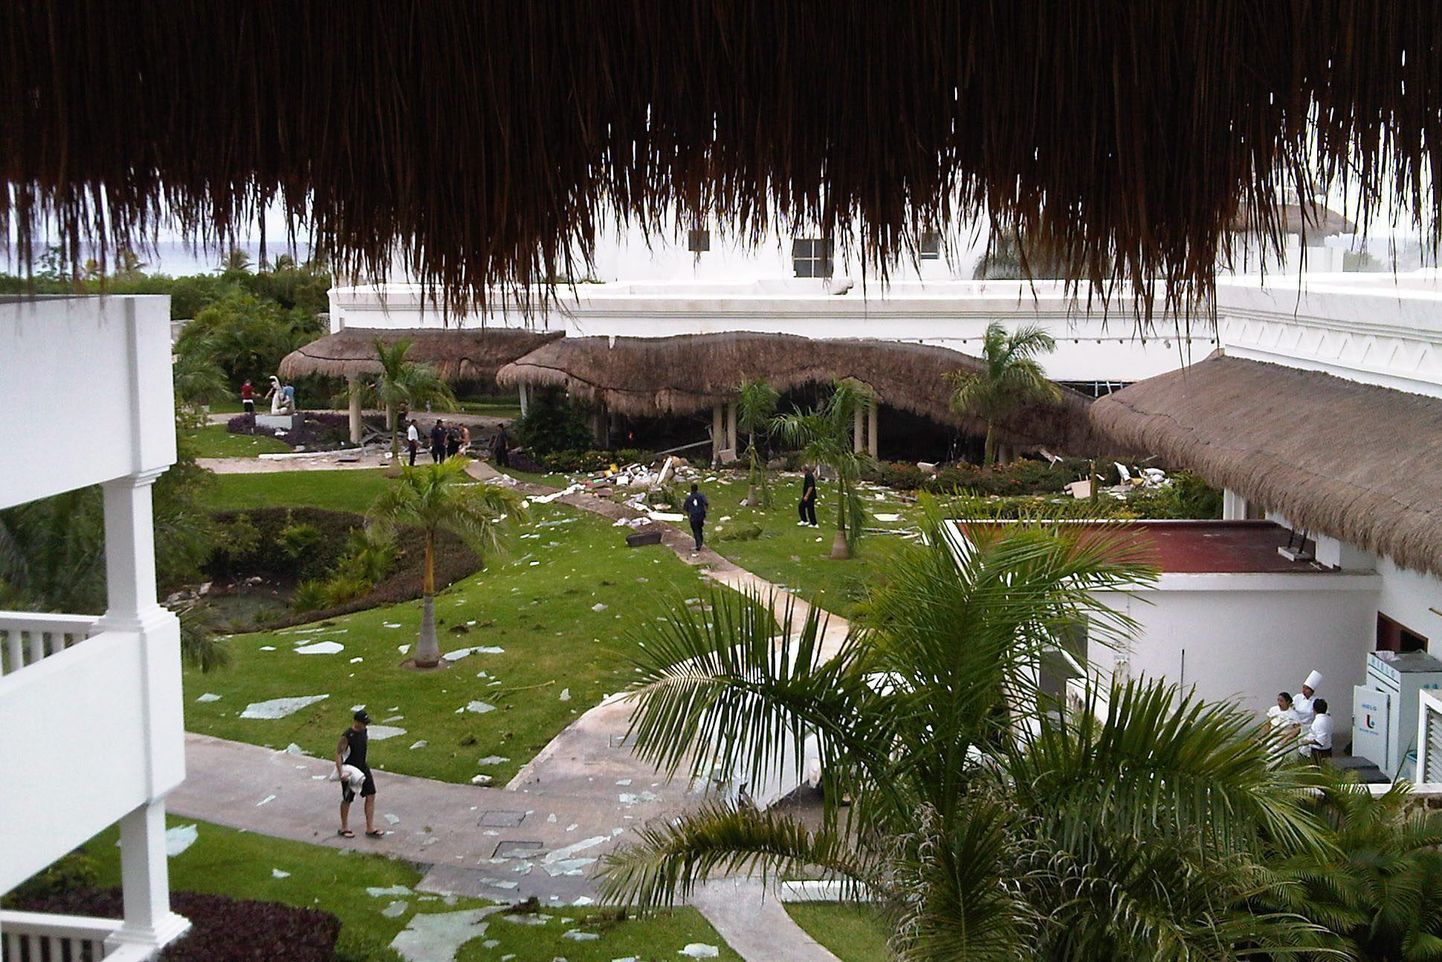 Playa del Carmenis asuvas hotellis leidis aset gaasiplahvatus